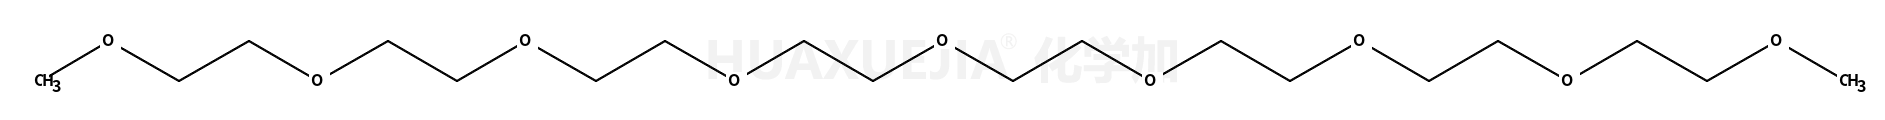 1-methoxy-2-[2-[2-[2-[2-[2-[2-(2-methoxyethoxy)ethoxy]ethoxy]ethoxy]ethoxy]ethoxy]ethoxy]ethane